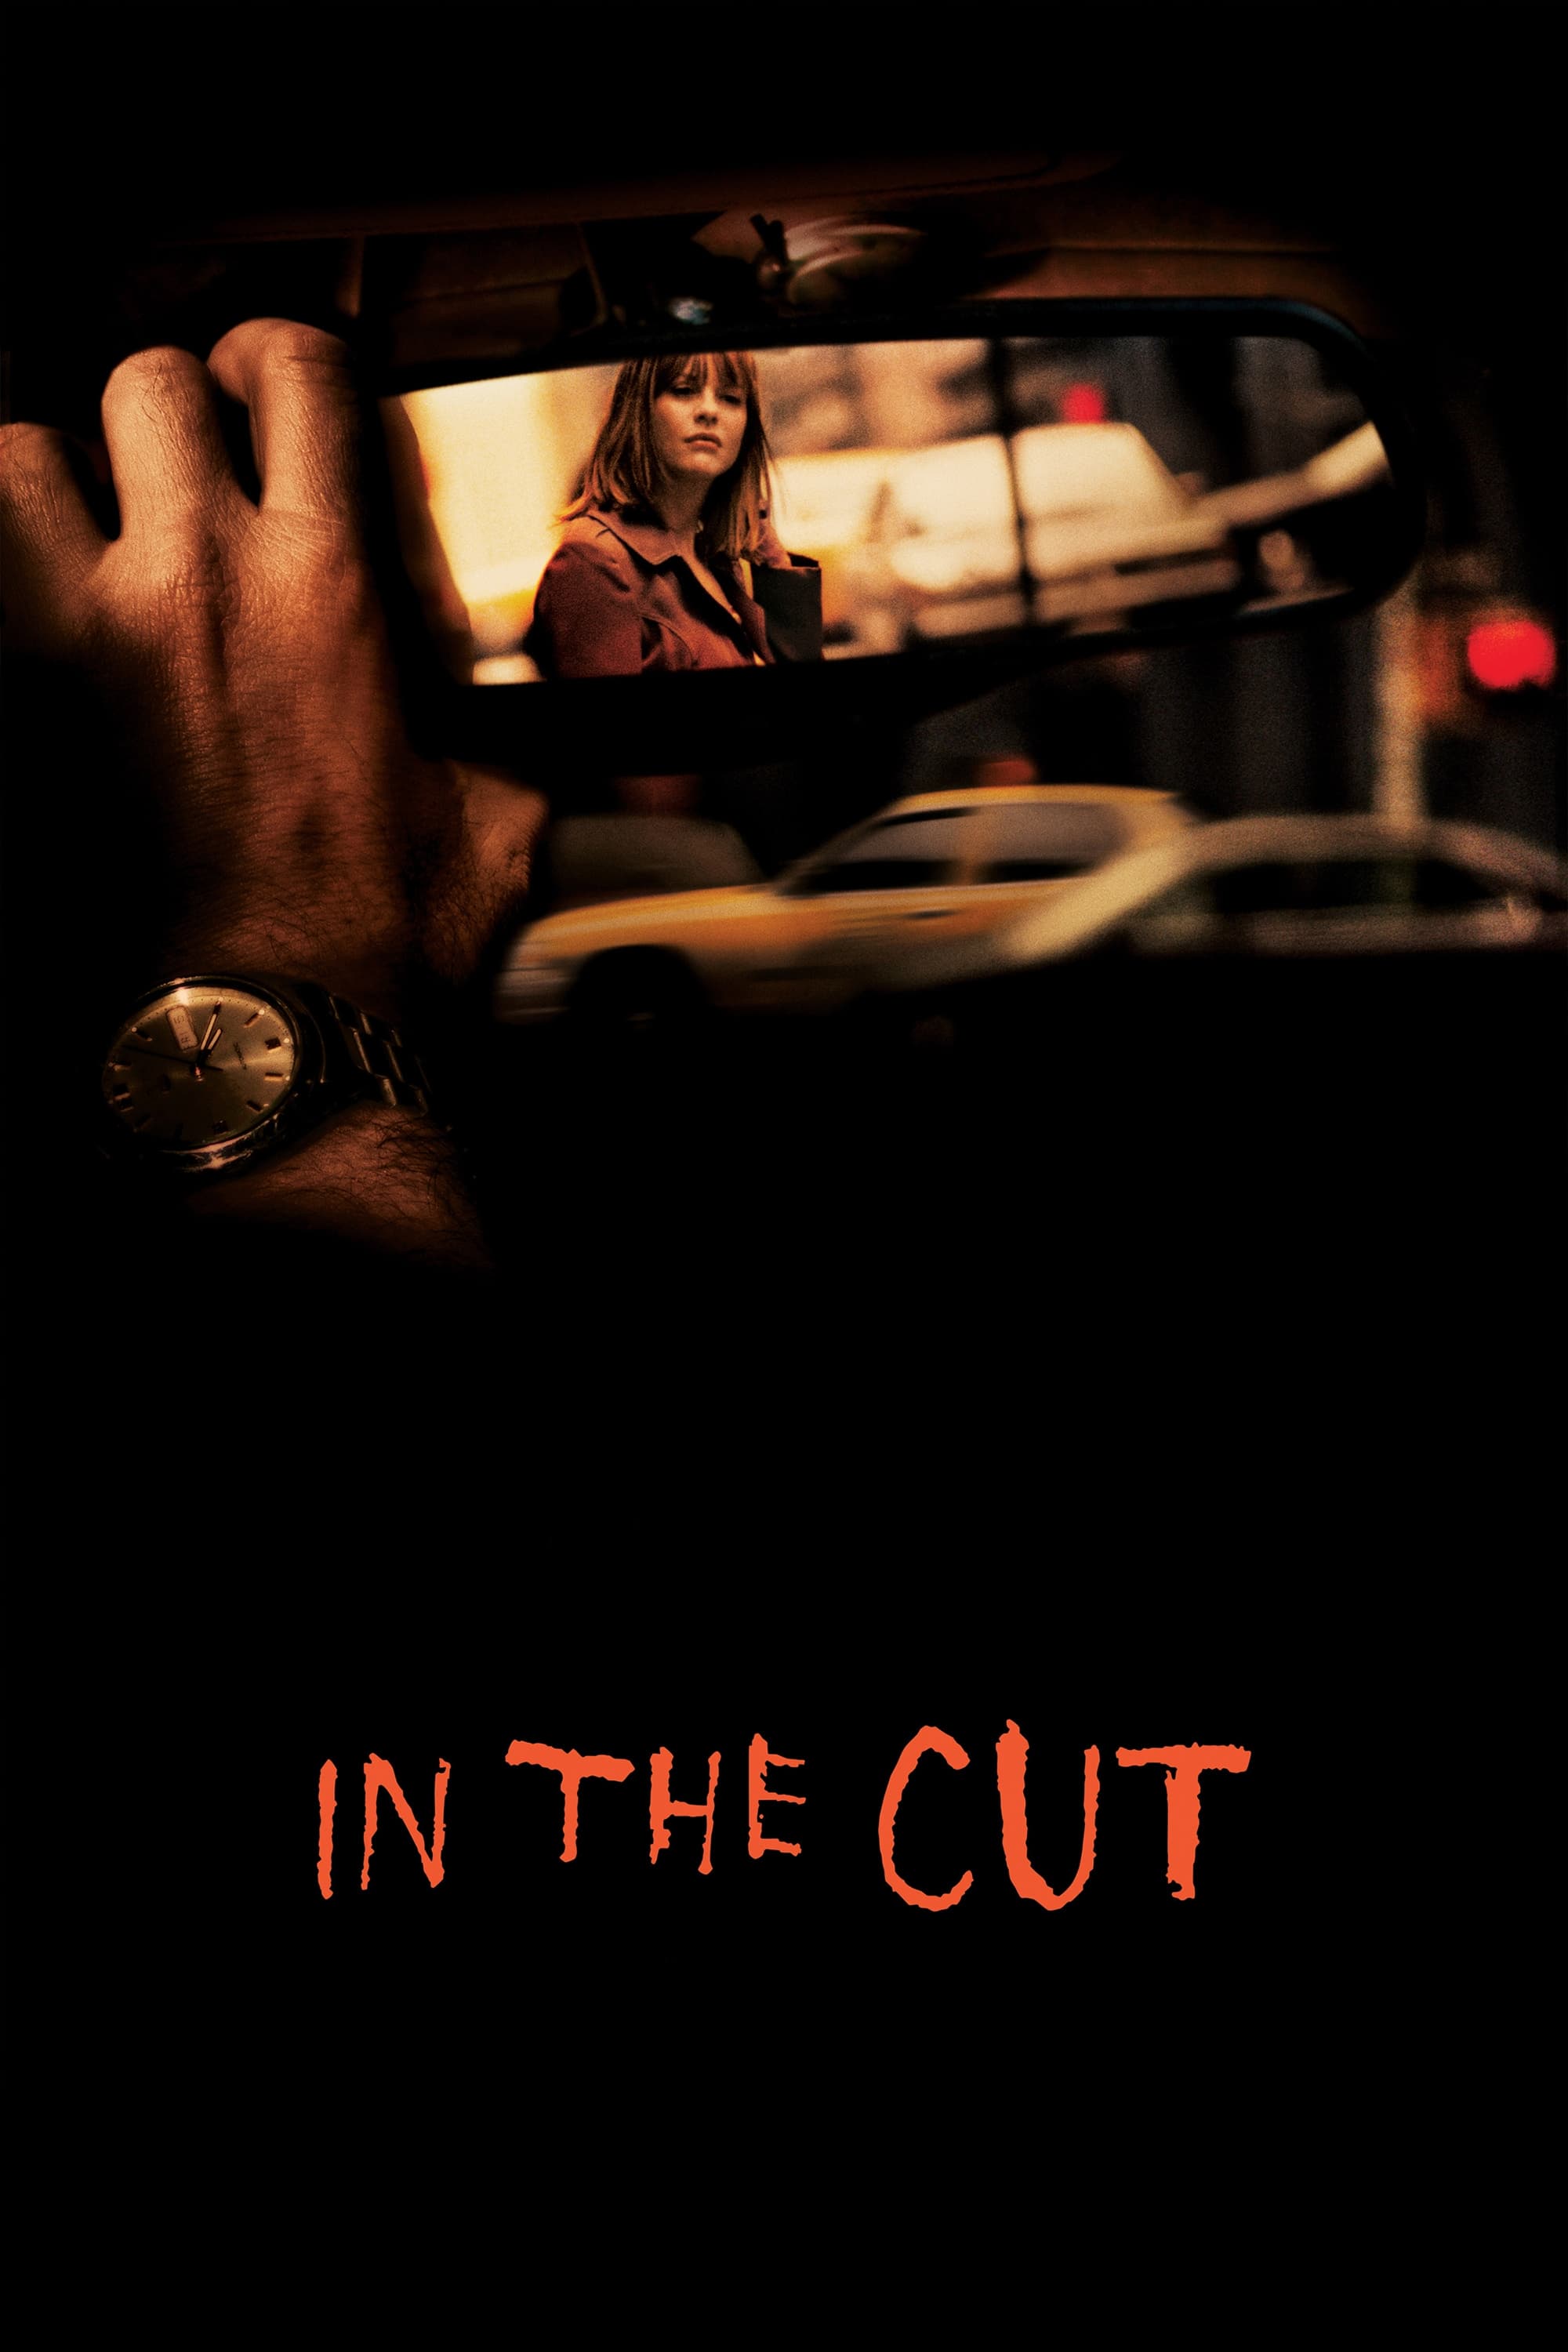 In the Cut (2003)